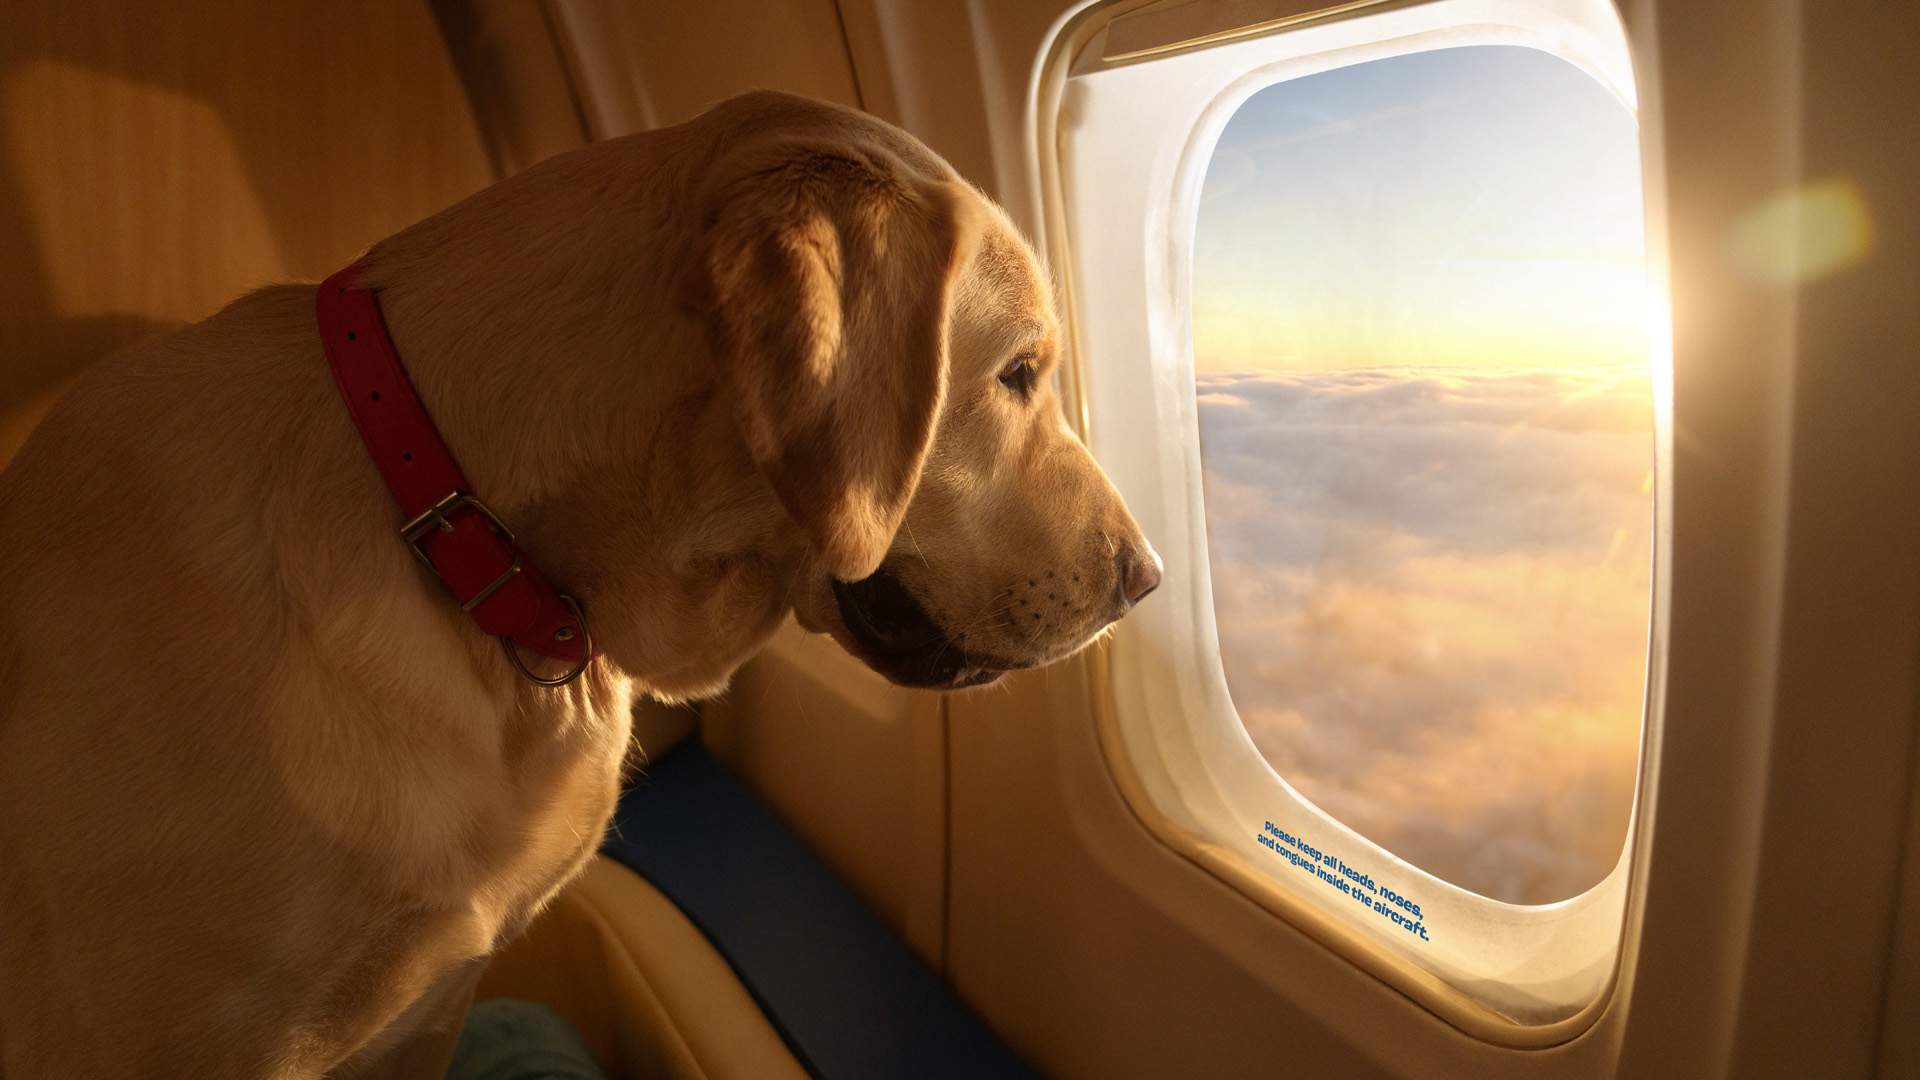 Vols que el teu gos viatge còmode amb avió? Prepara 6000 euros